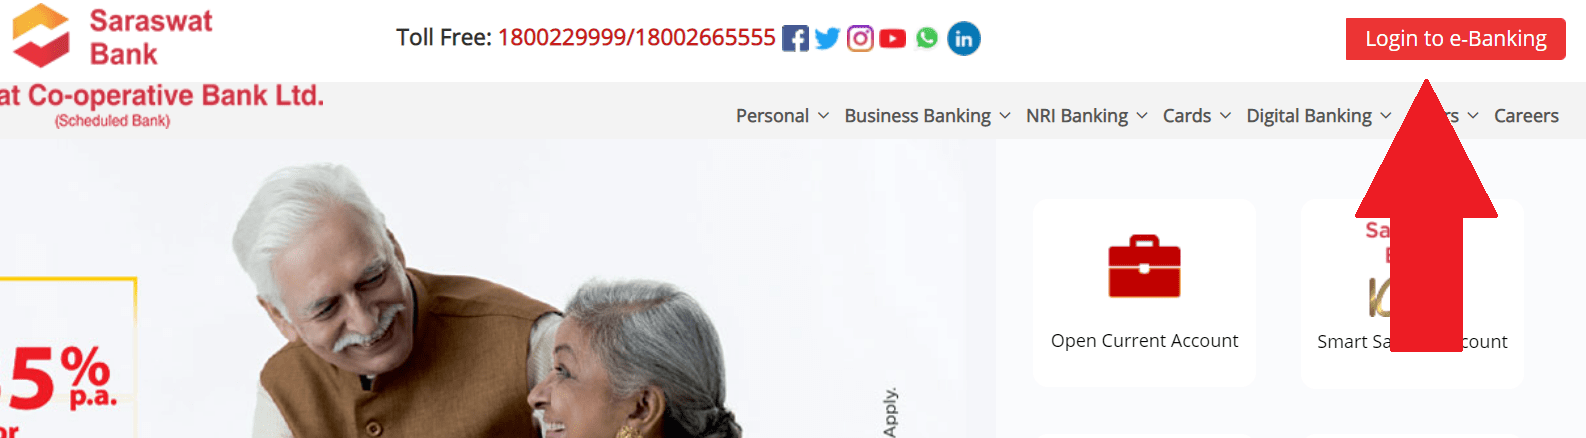 Saraswat Bank Net Banking Registration 